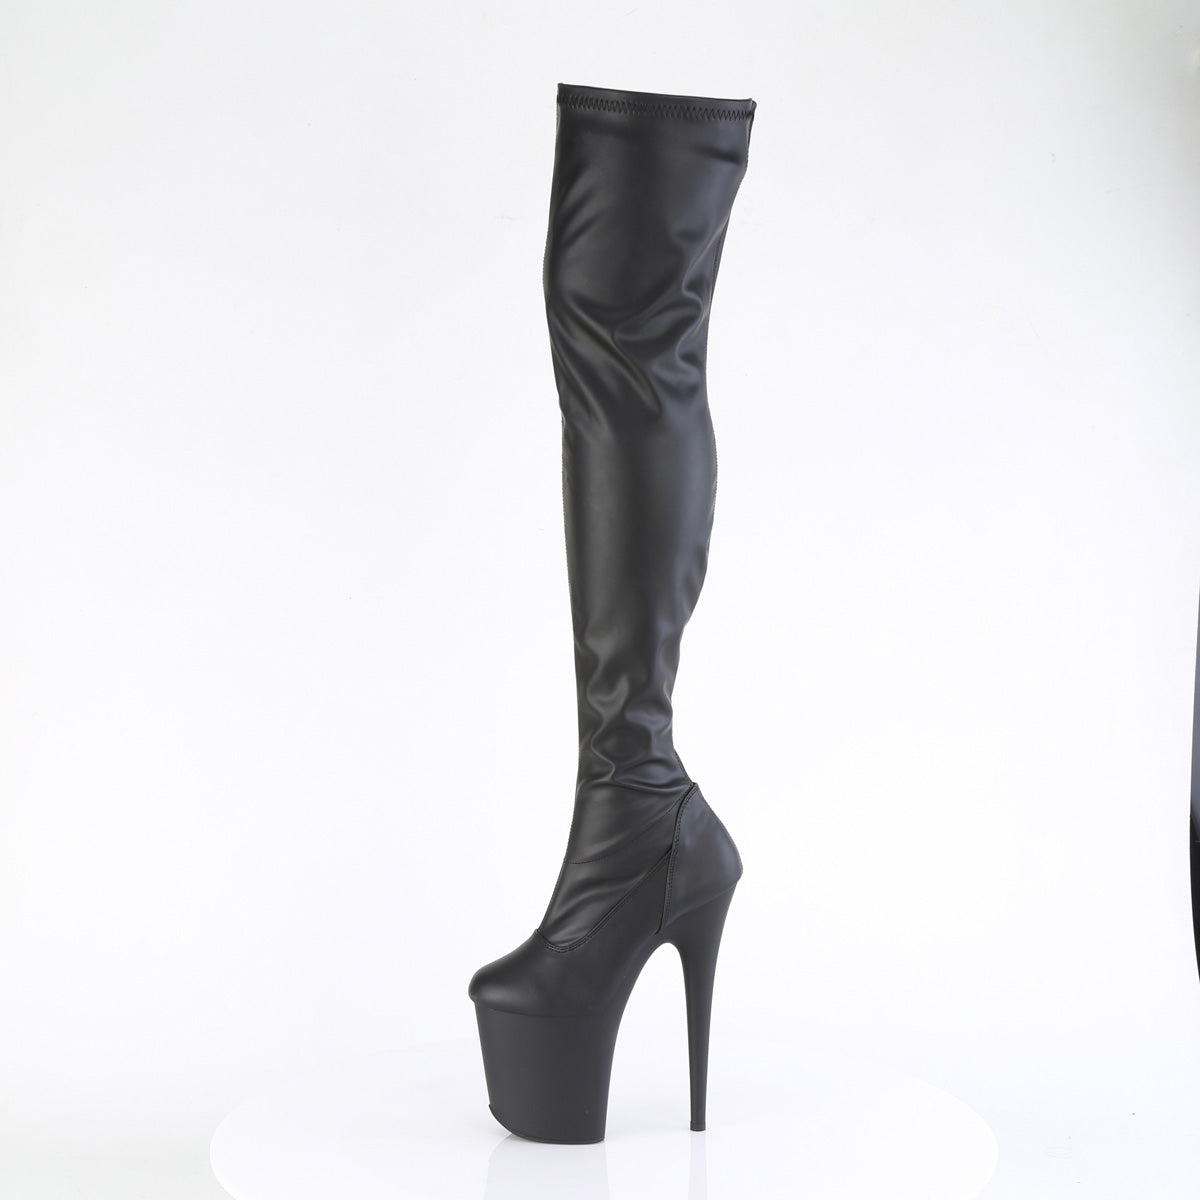 FLAMINGO-3000 Pleaser Black Faux Leather/Black Matte Platform Shoes [Thigh High Boots]